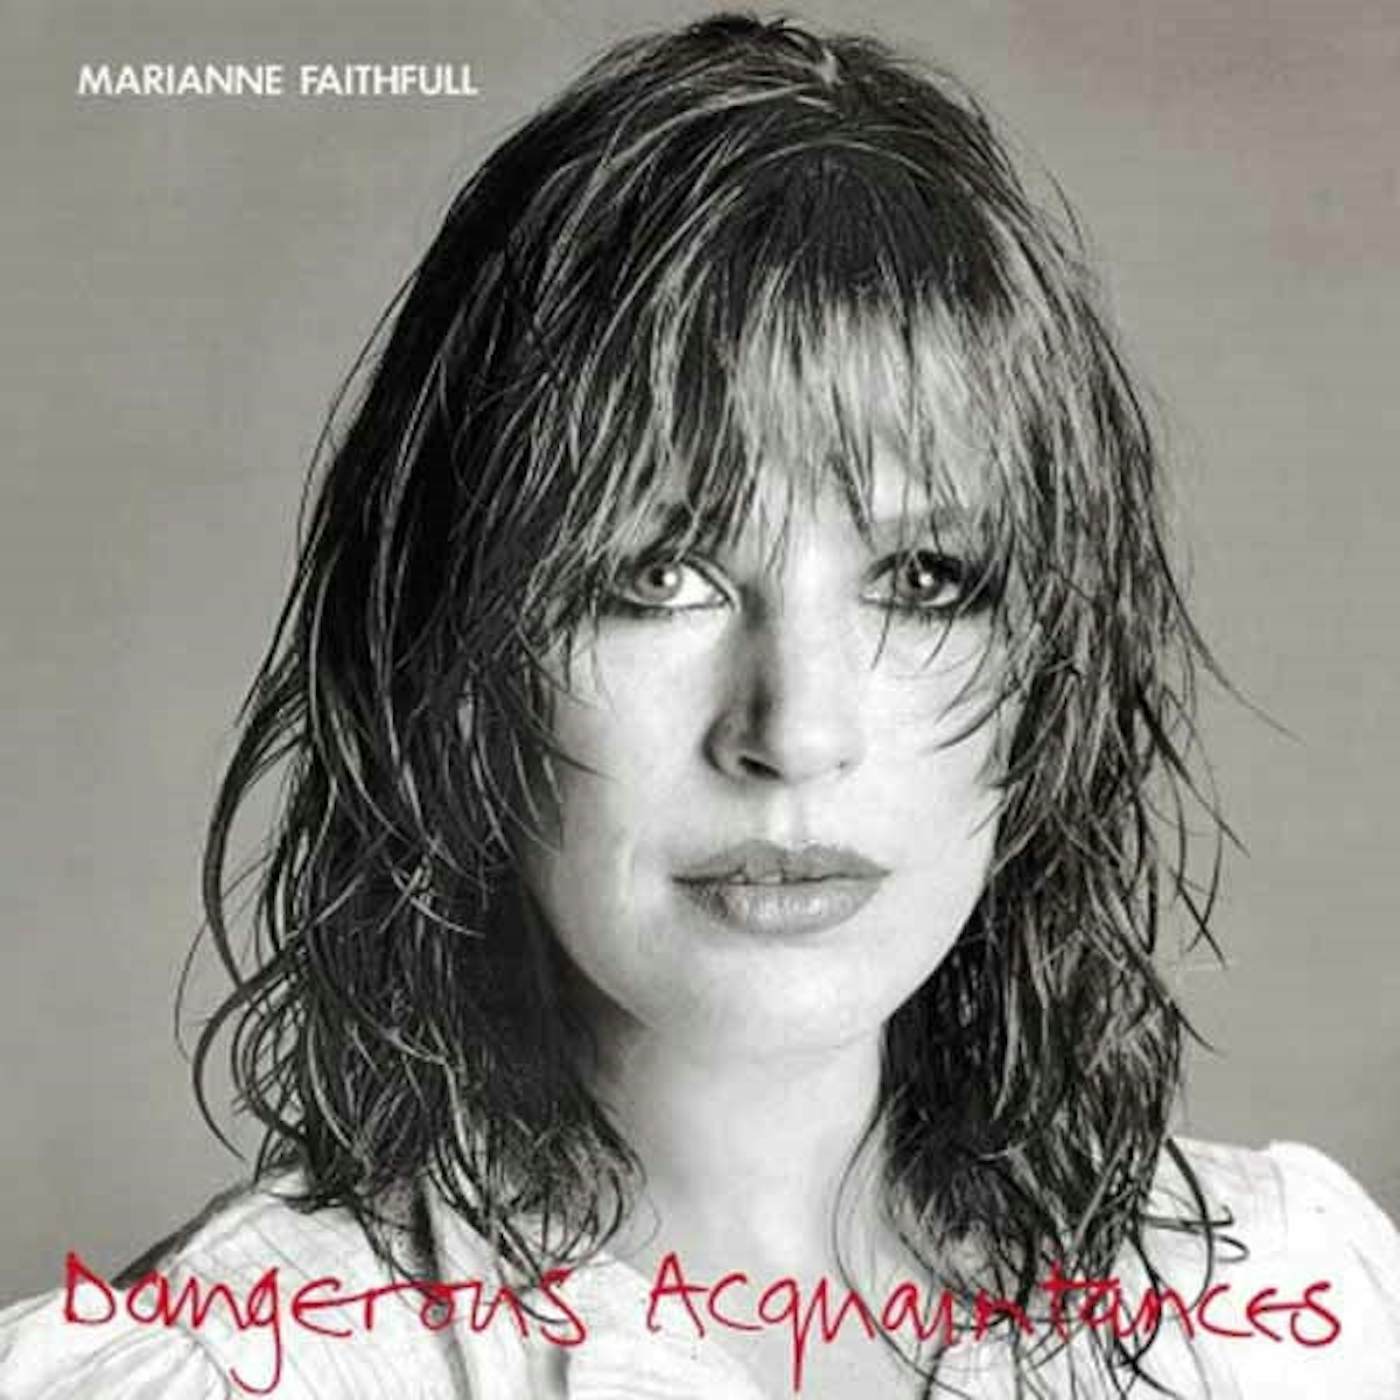 Marianne Faithfull LP - Dangerous Acquaintances (Coloured) (Vinyl)